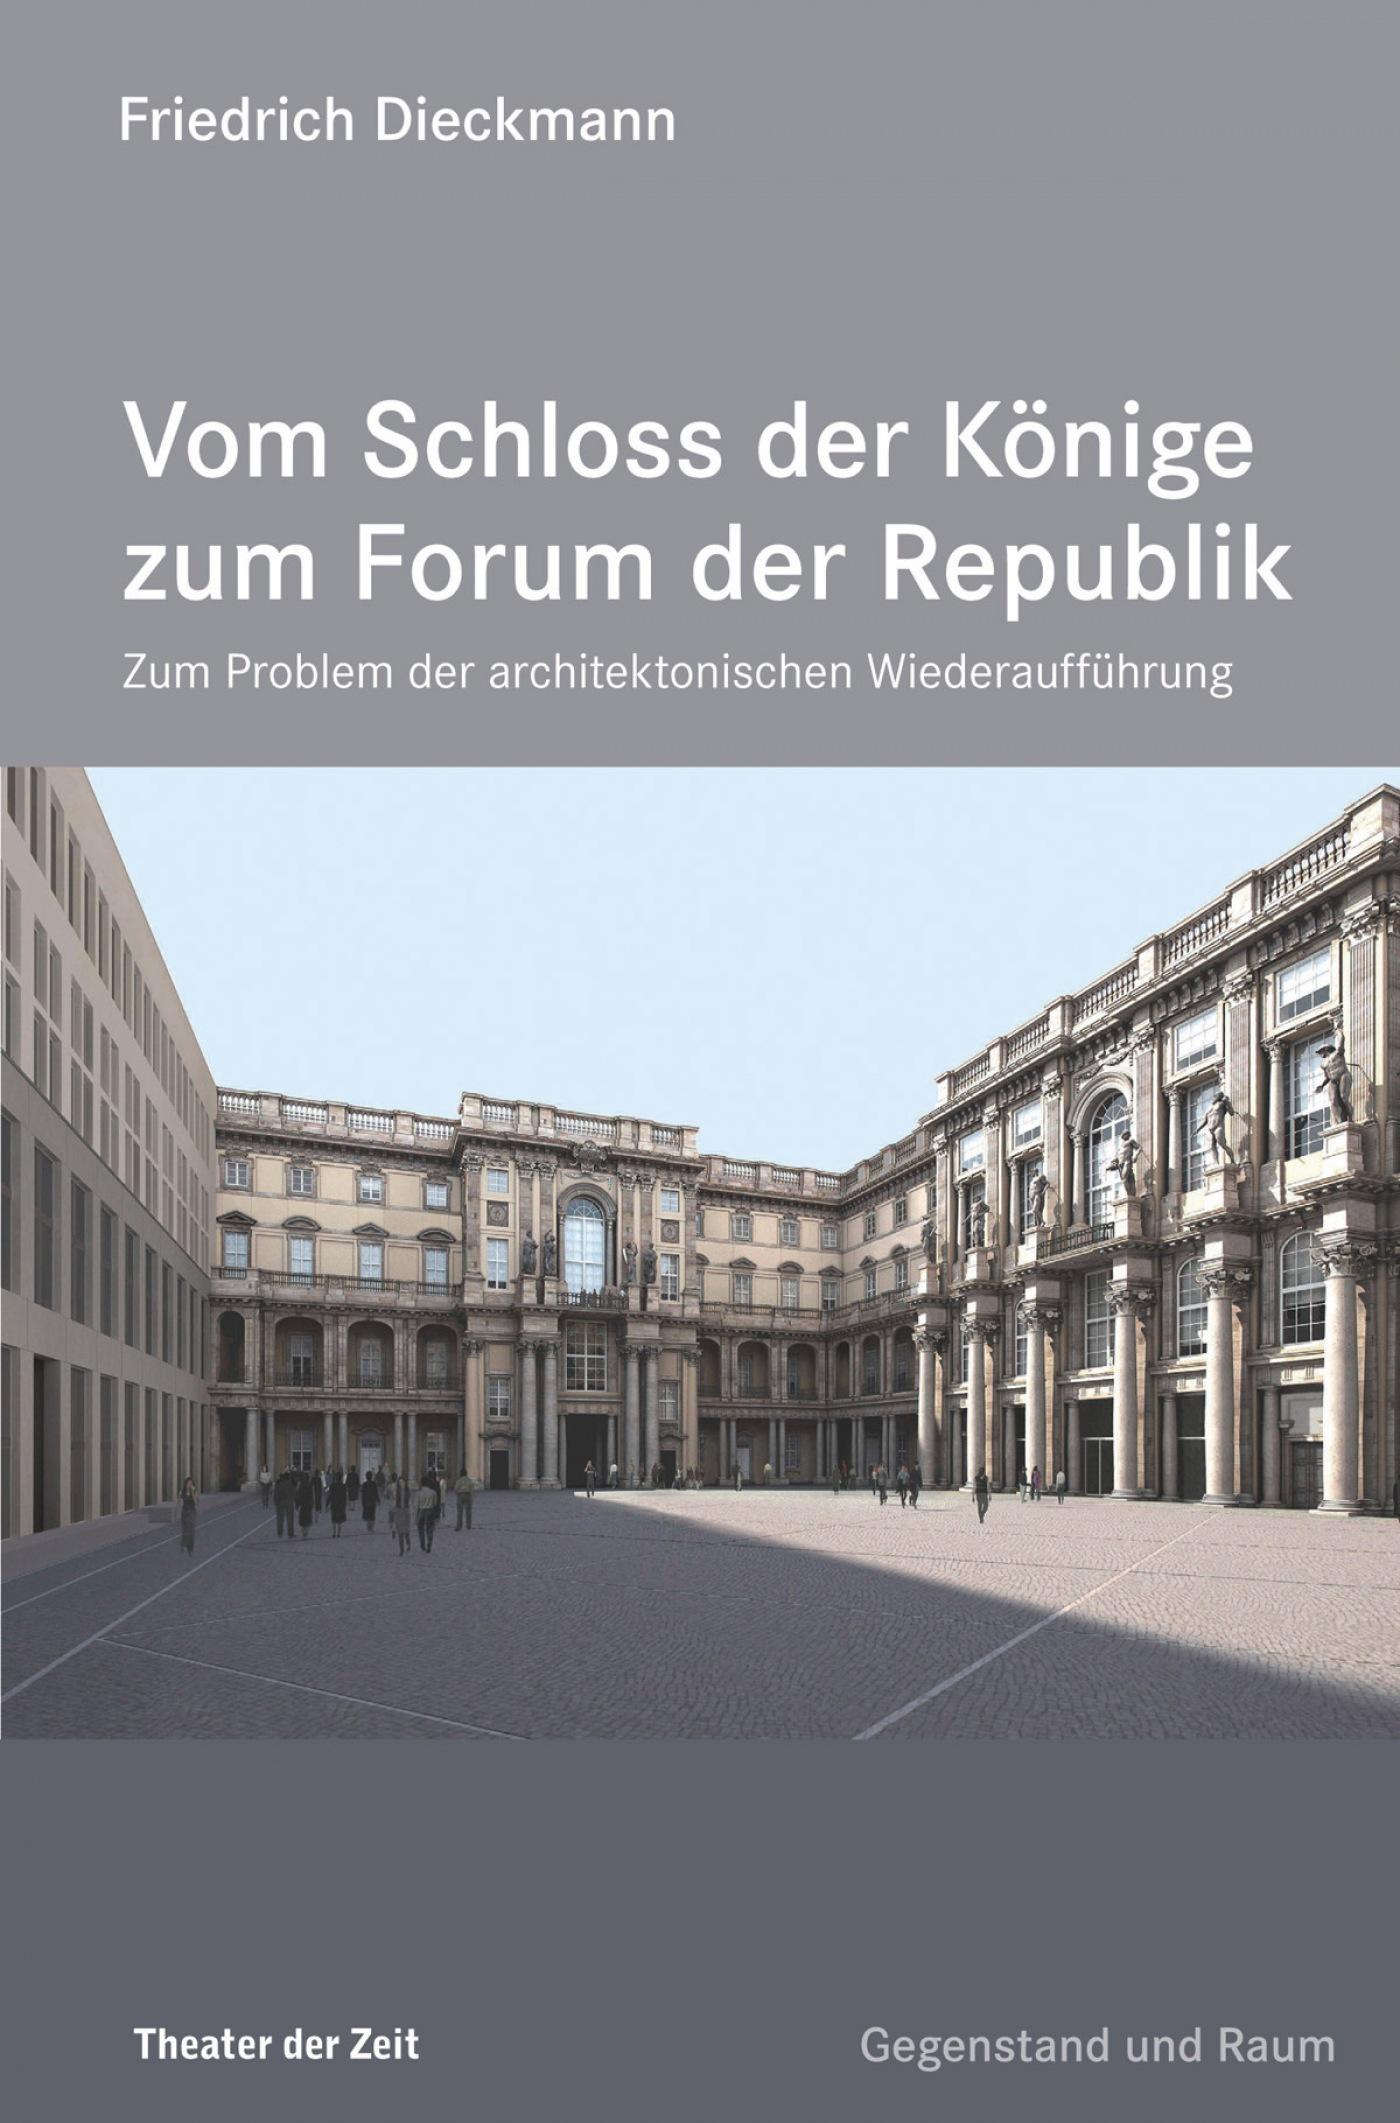 Edition Gegenstand und Raum "Vom Schloss der Könige zum Forum der Republik"